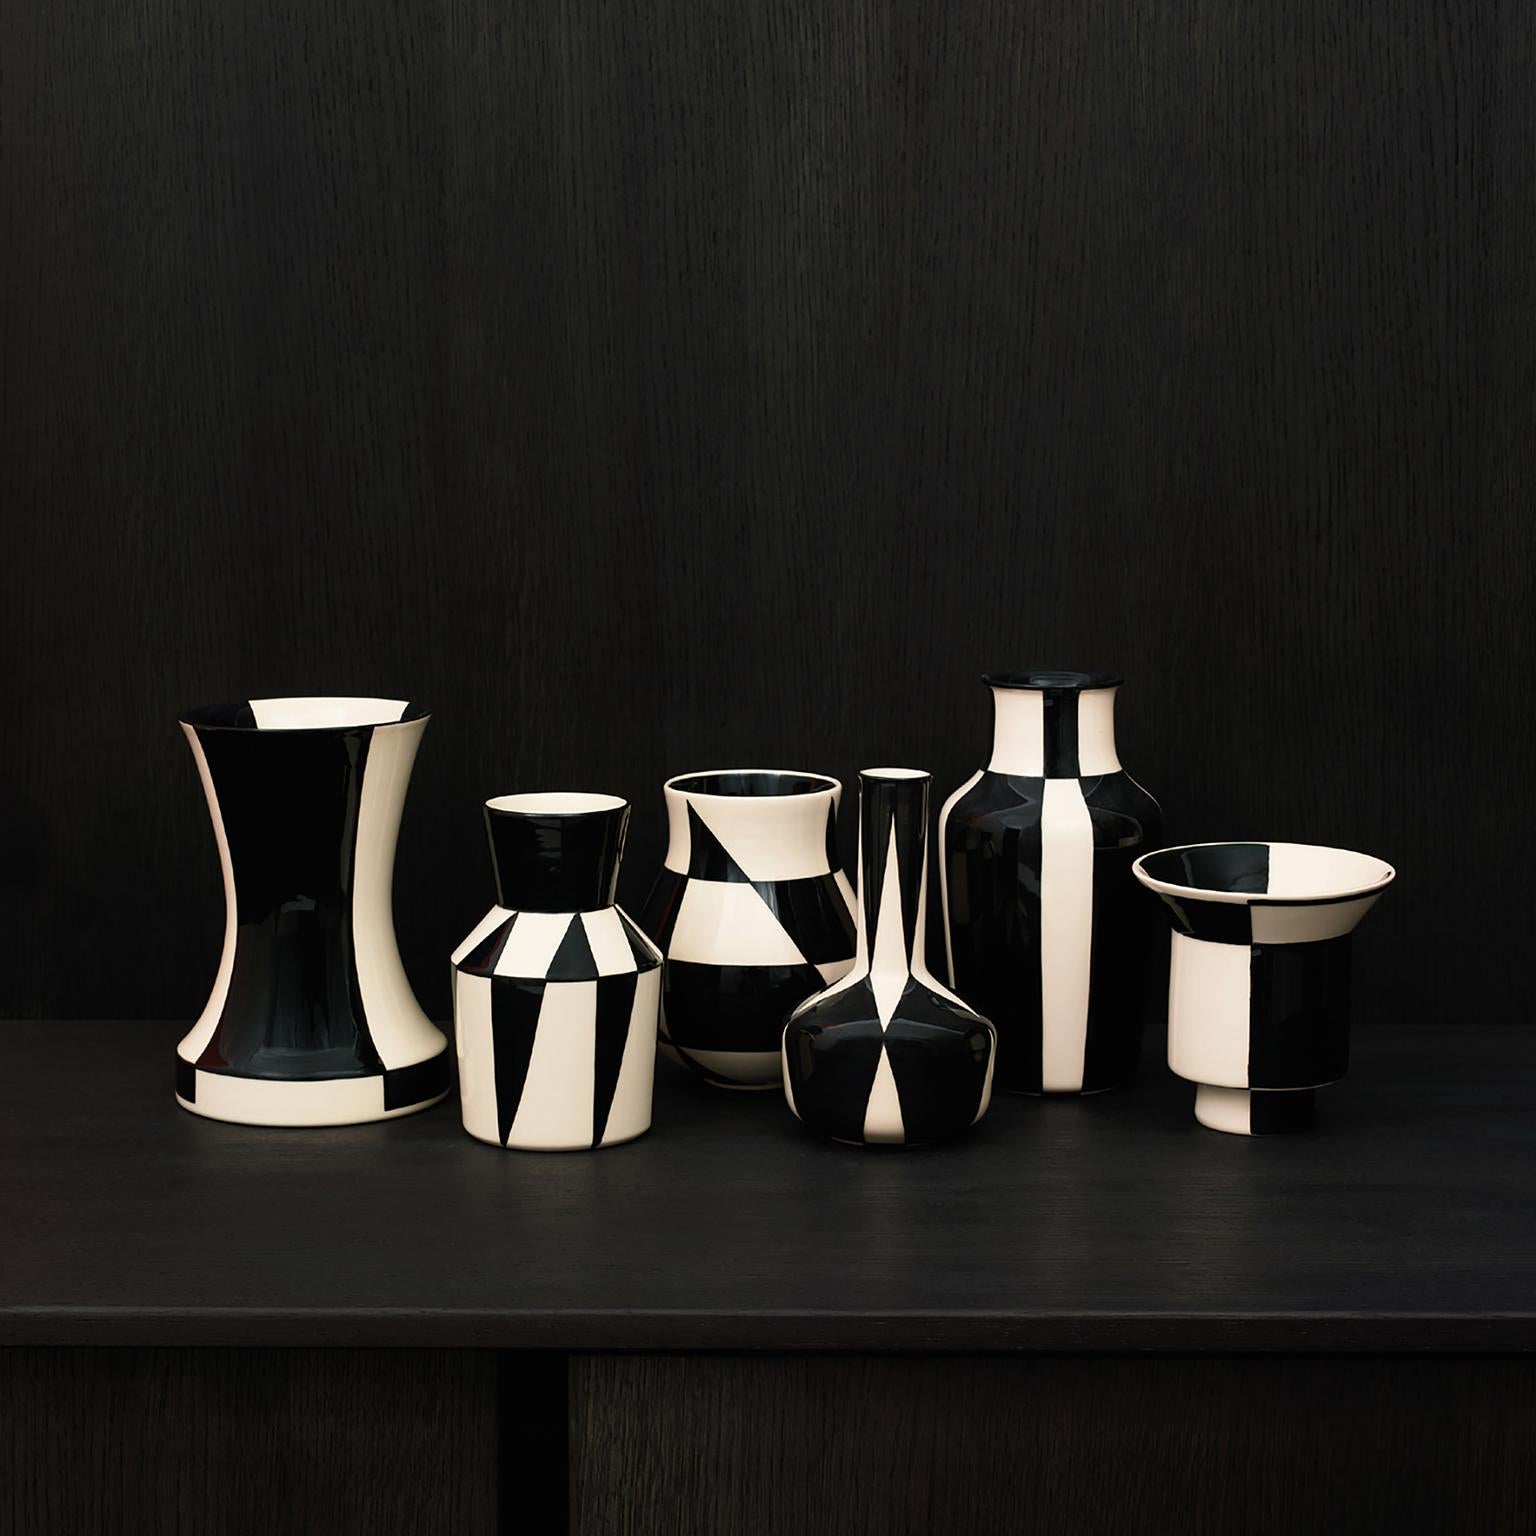 Cet ensemble de vases de 6 pièces est une édition spéciale des Hedwig Bollhagen Werkstätten für Keramik pour l'année anniversaire du Bauhaus en 2019. Hedwig Bollhagen a été fortement influencée dans ses créations par ses collègues, les anciens du